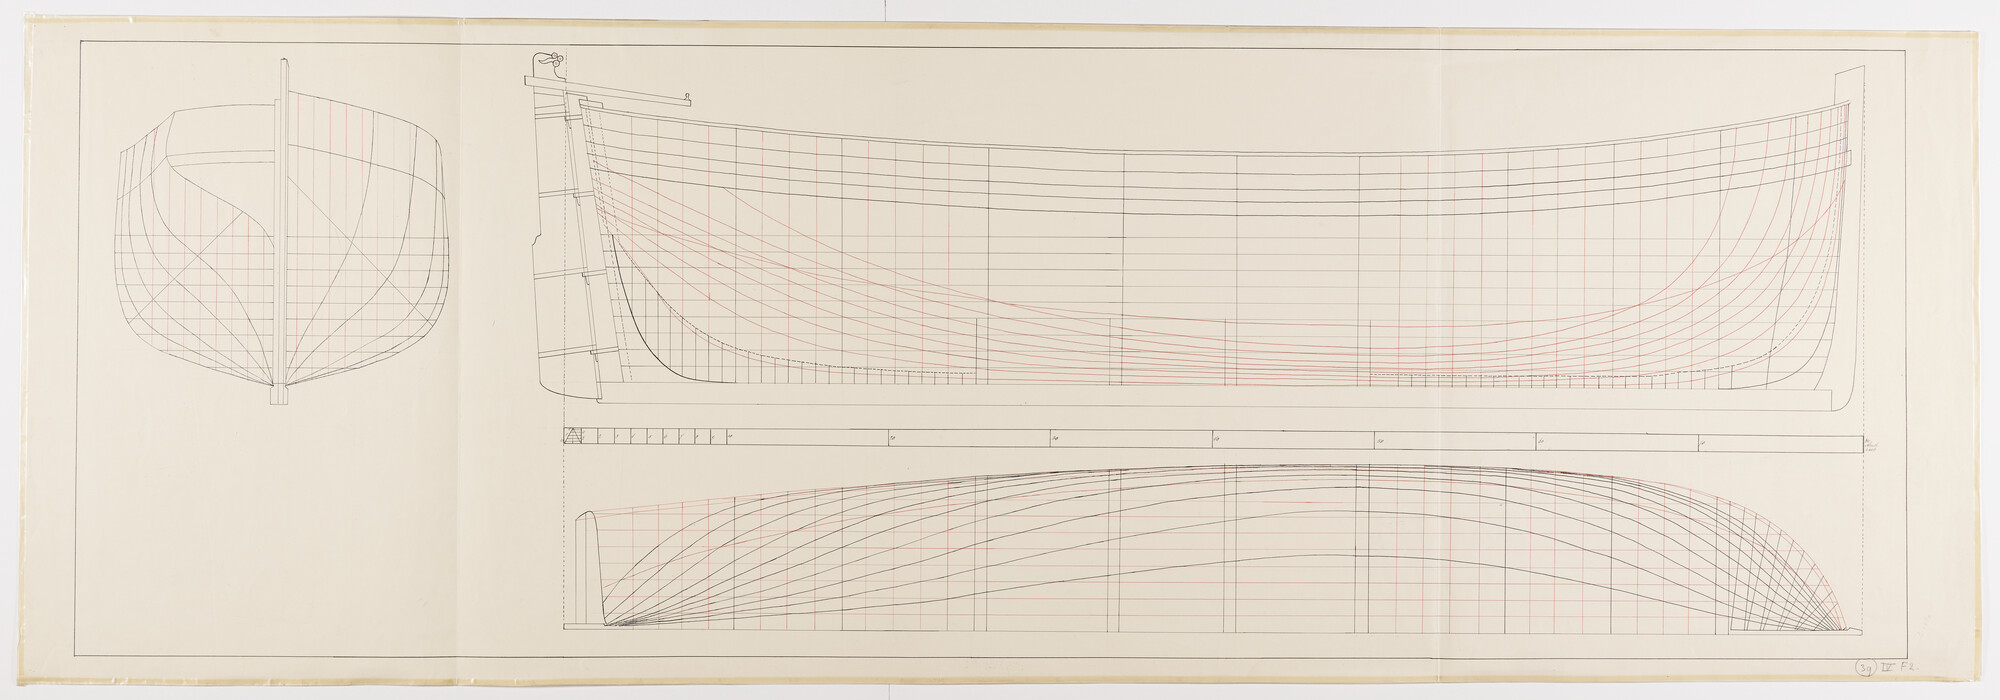 S.0563(02); Lijnenplan, Zijaanzicht en Zeilplan van een vissloep, omstreeks 1880; technische tekening